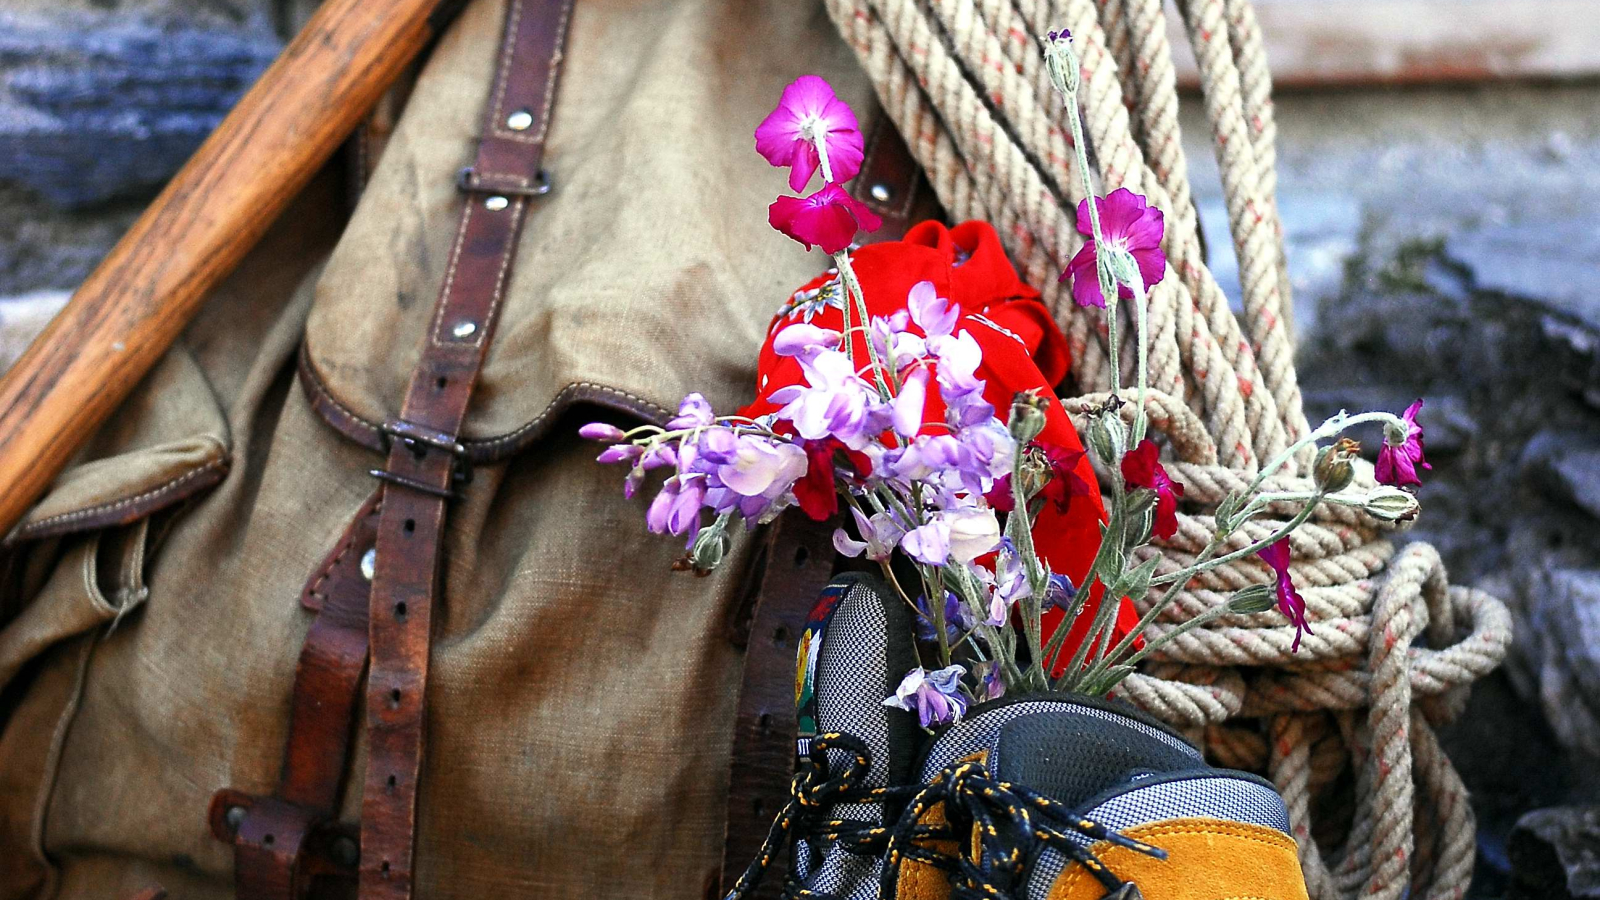 accessoires de randonnée, chaussure, sac à dos, corde, fleurs